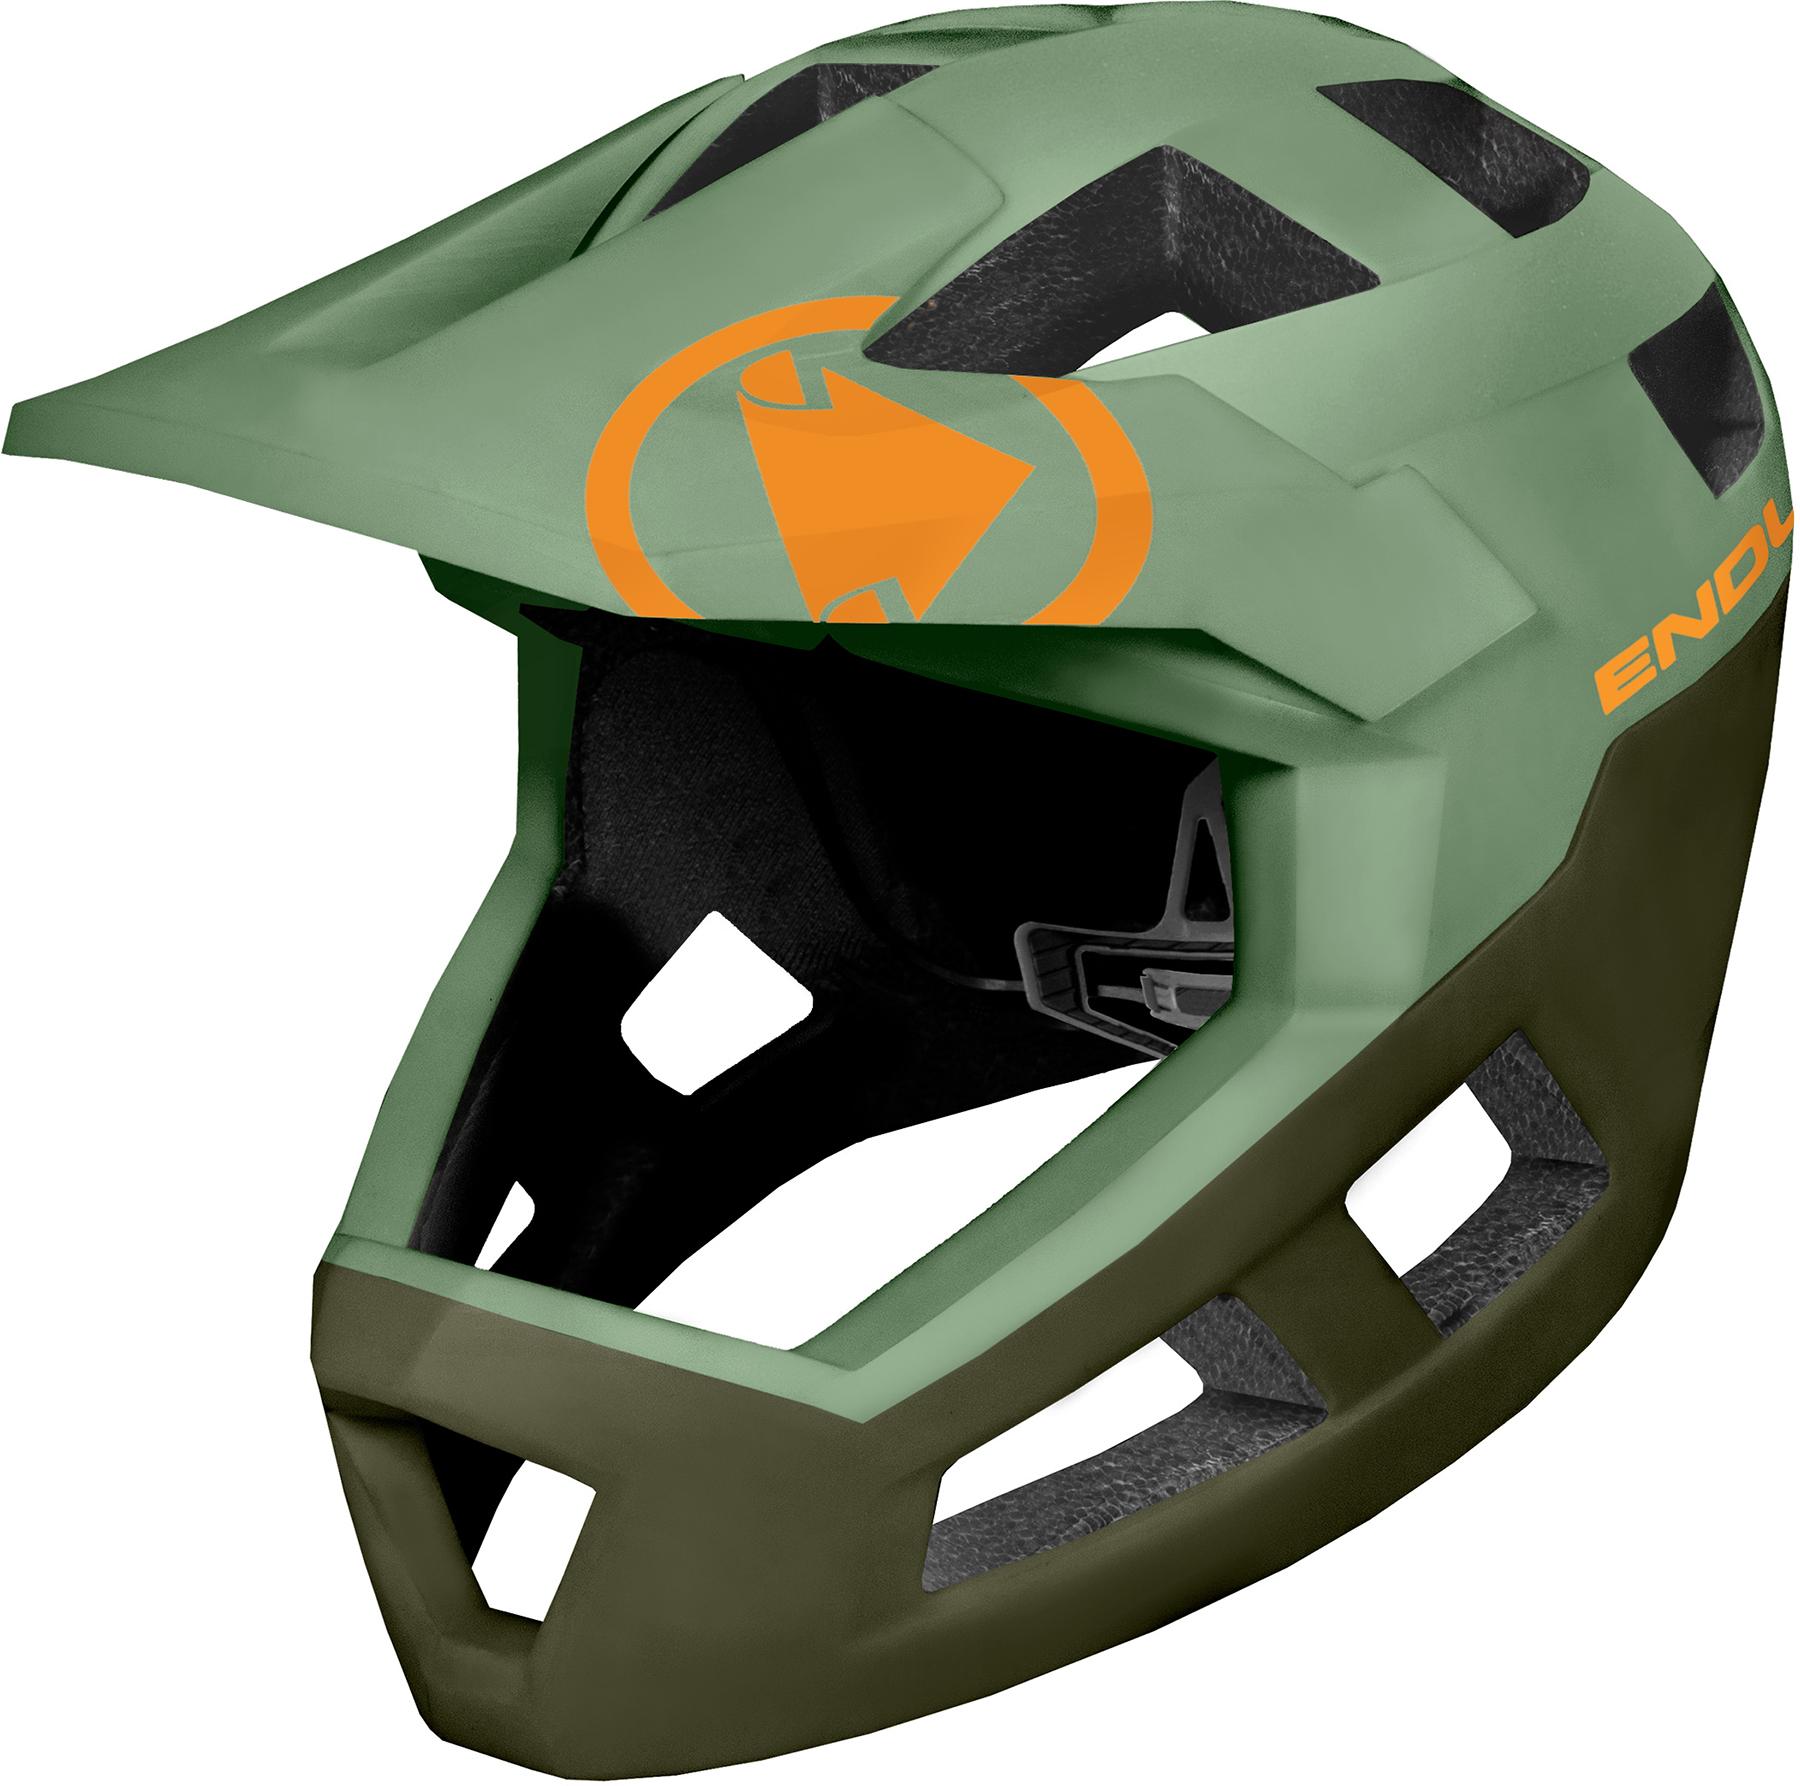 Endura Singletrack Full Face Helmet - Olive Green